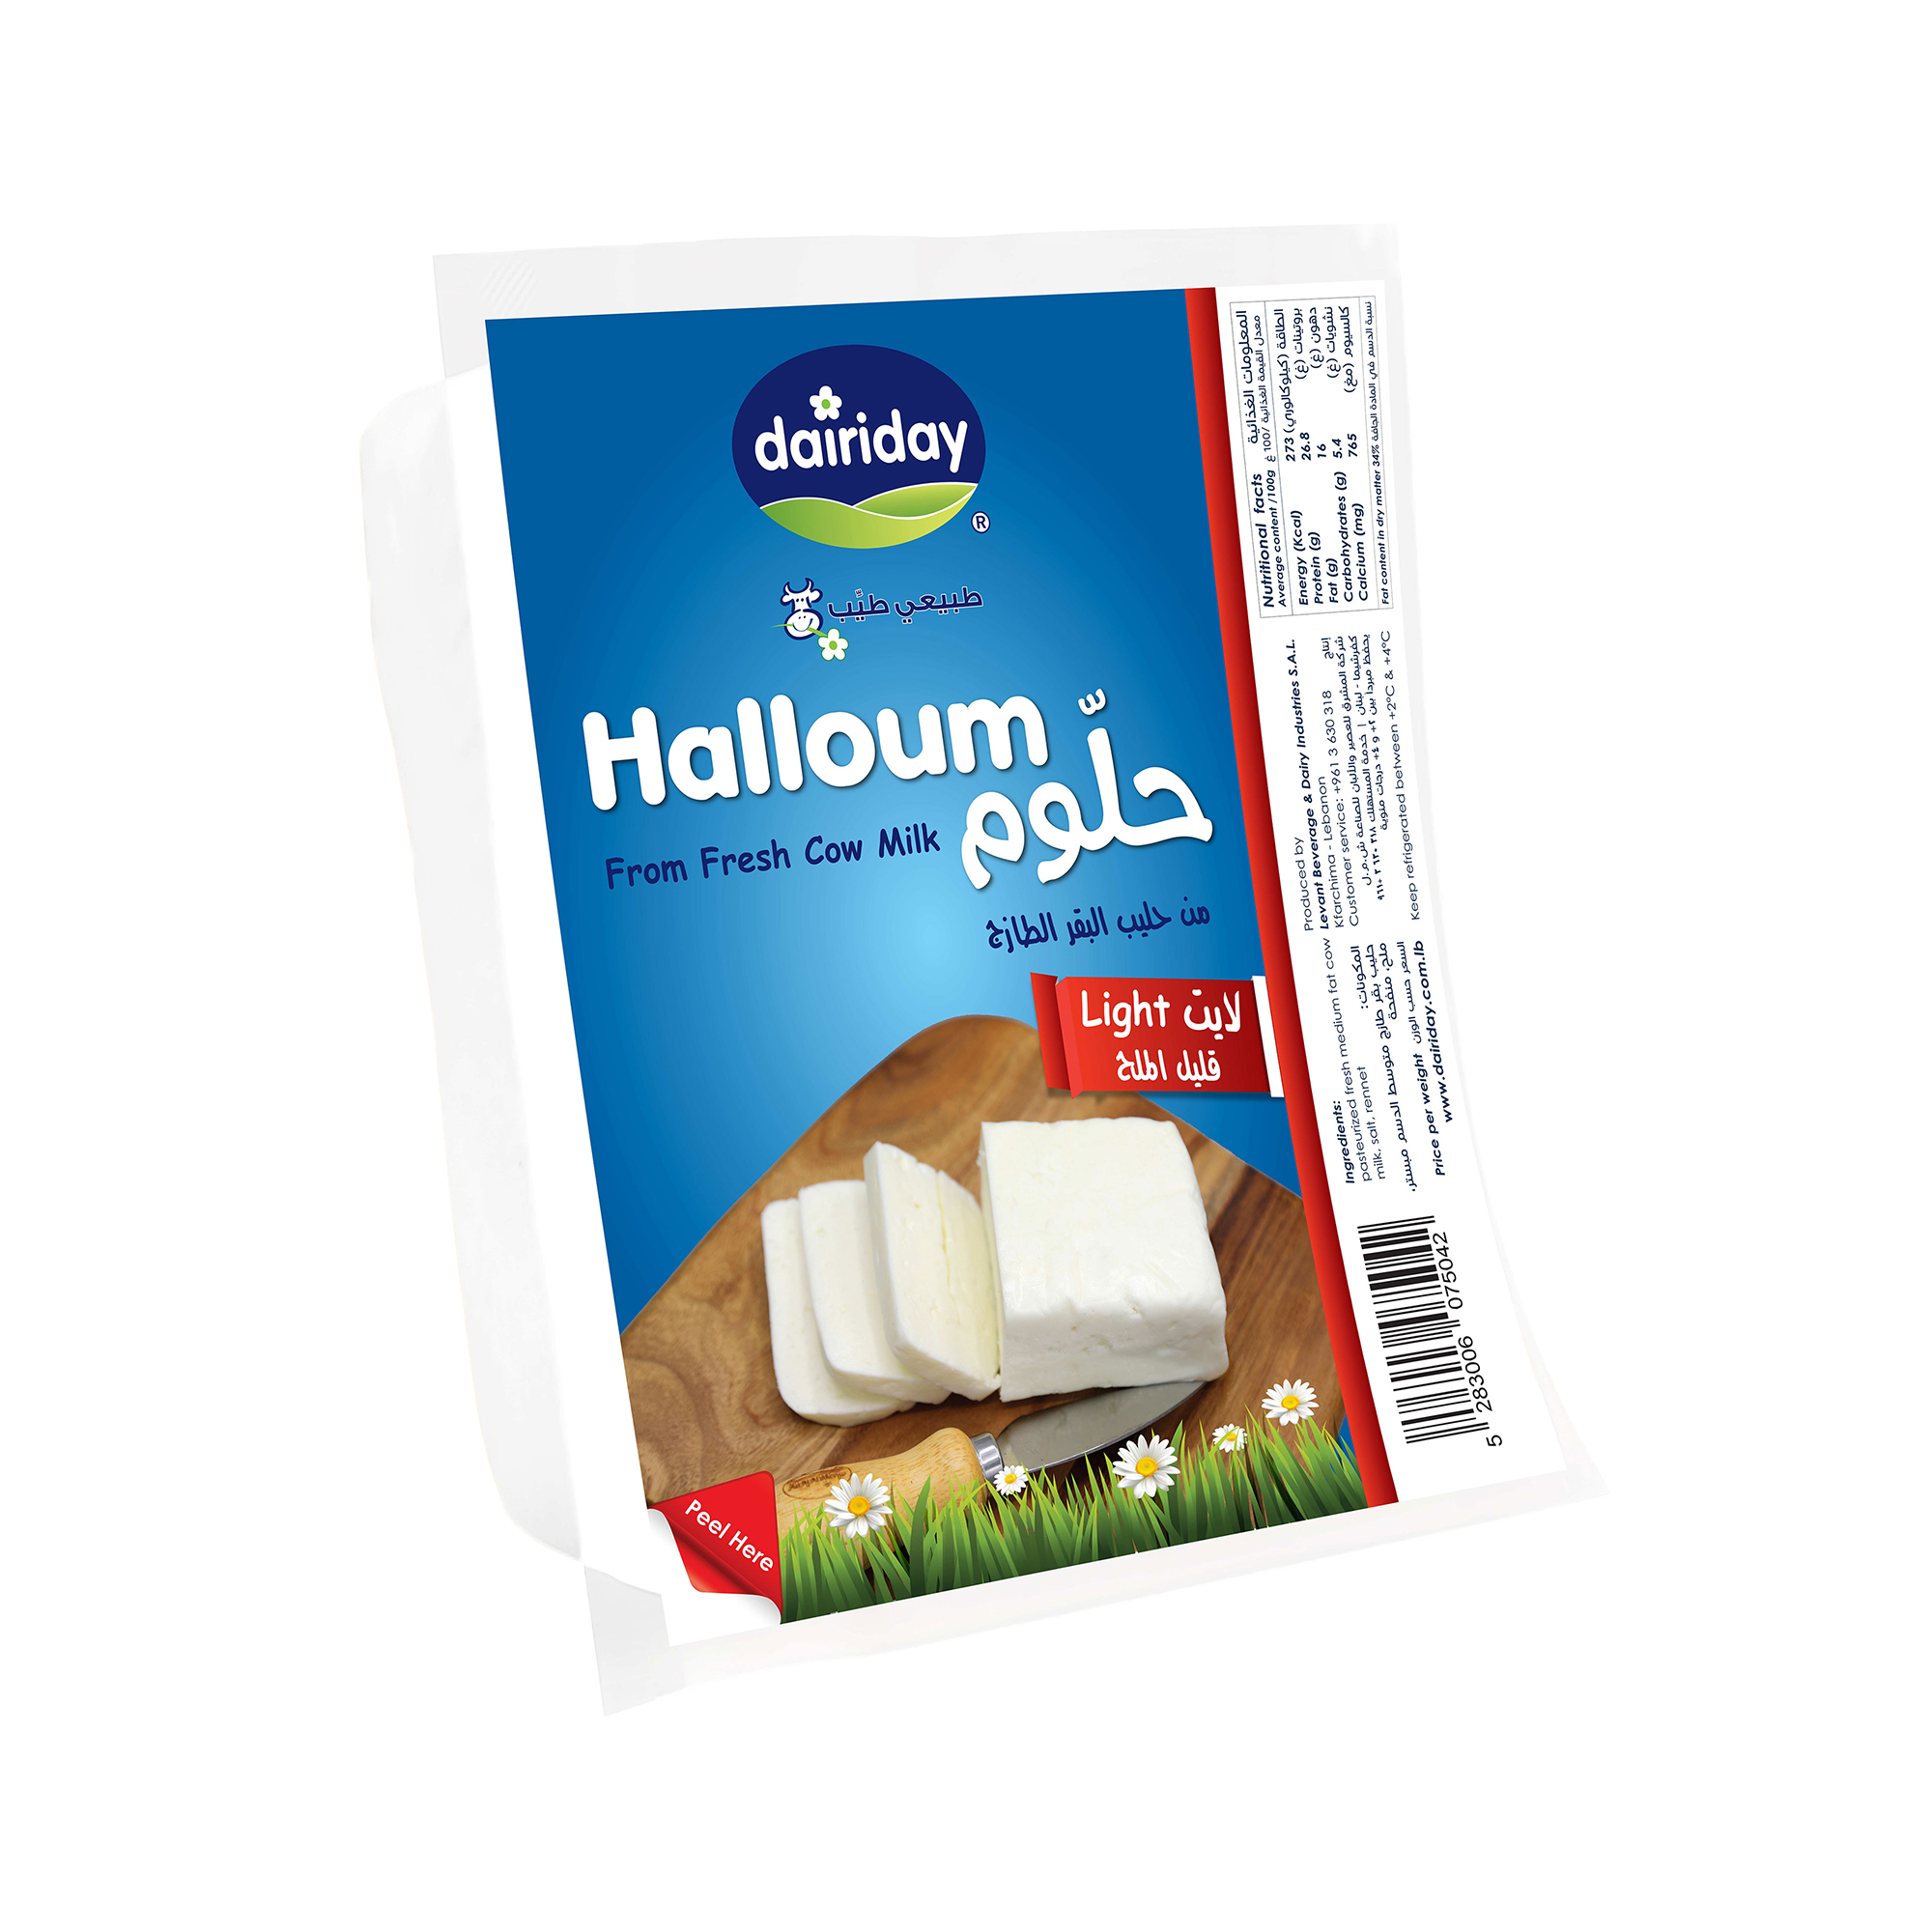 Dairiday-Halloum-Light-white-cheese